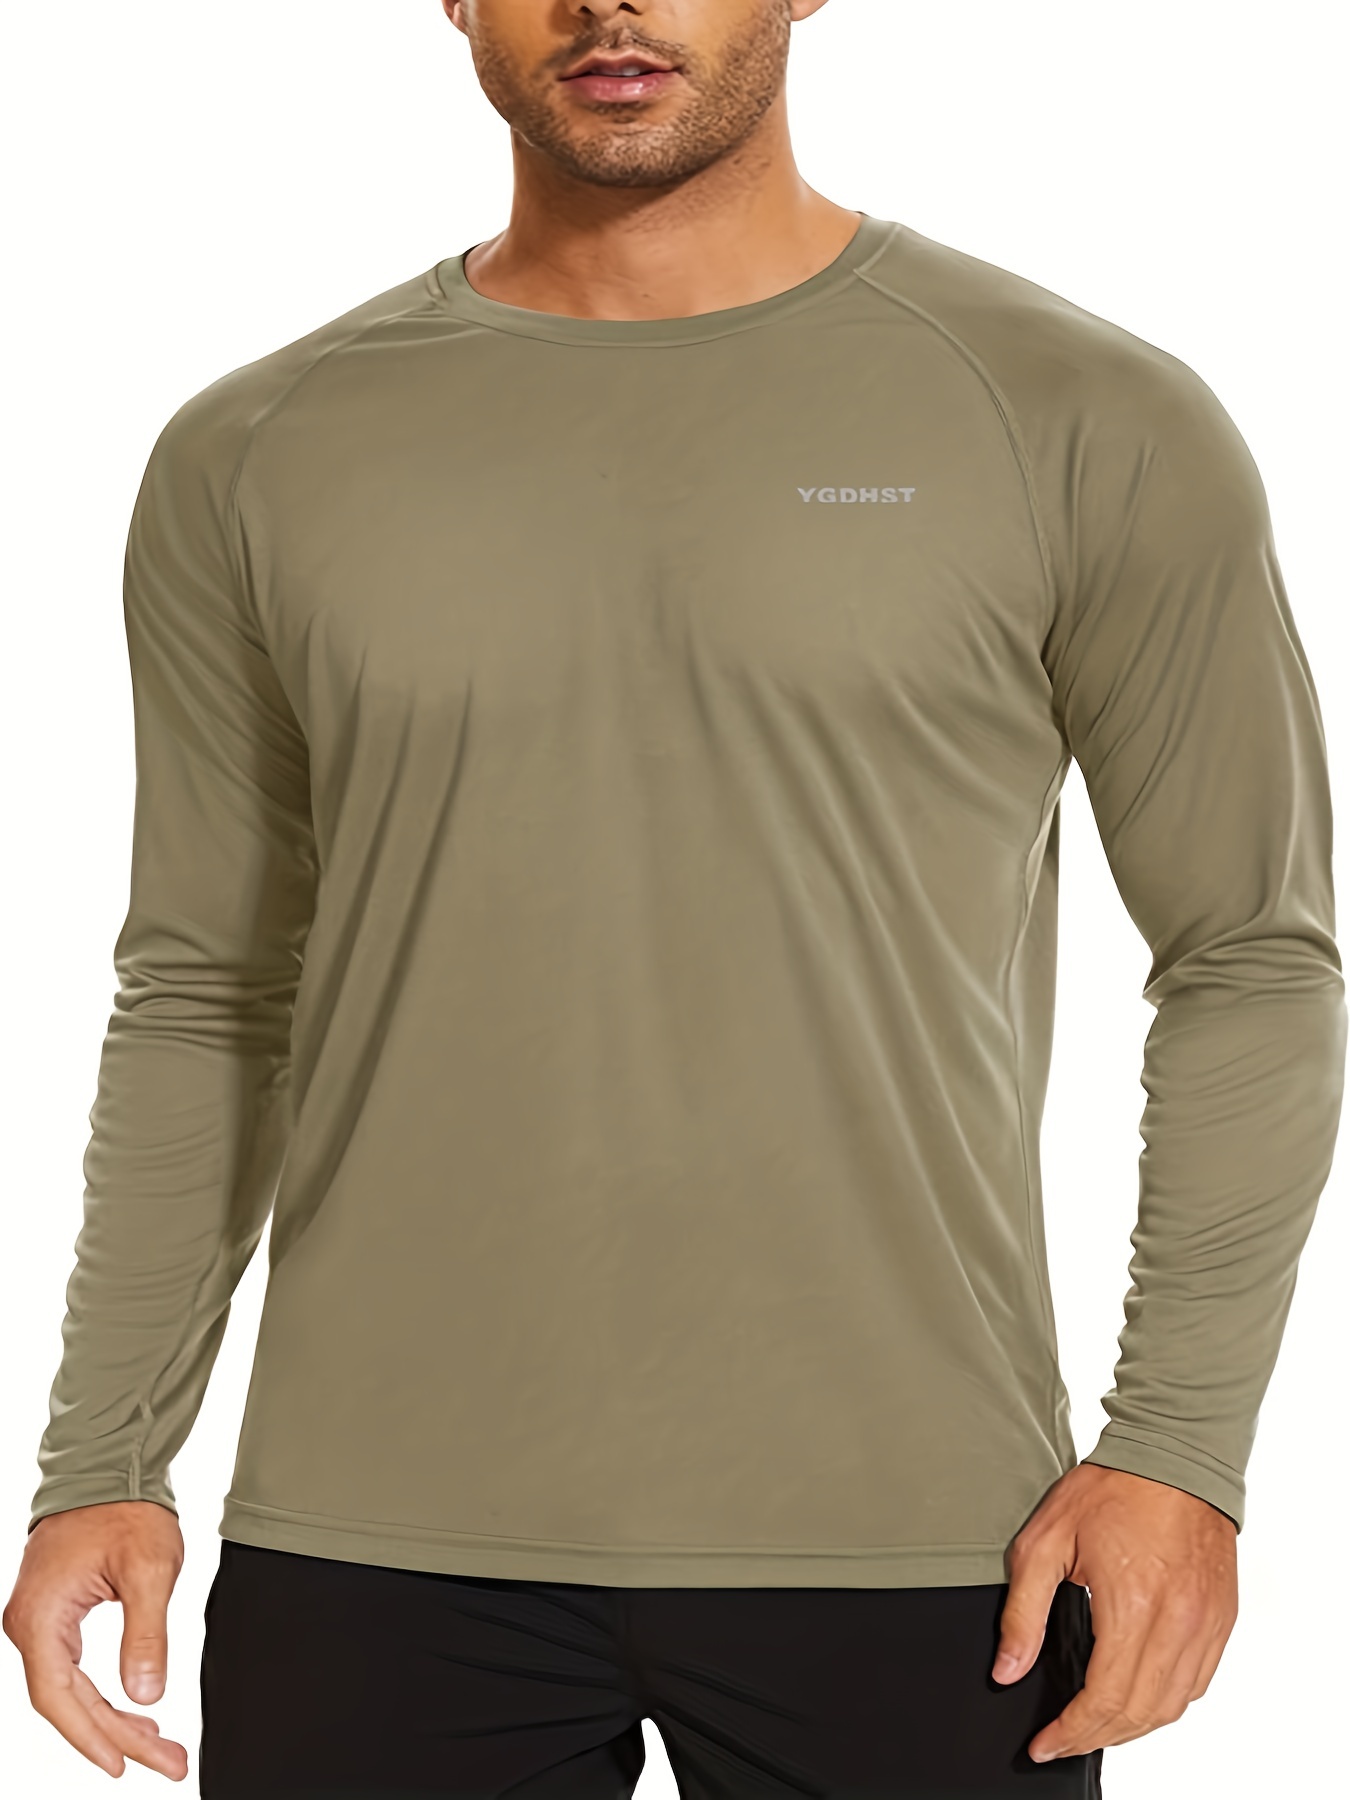 Tuna Fishing Shirts for Men Long Sleeve UPF 50+ UV Sun Protection Rash  Guard Quick Dry for Hiking Running Swimming (Dark Grey XL 5#)